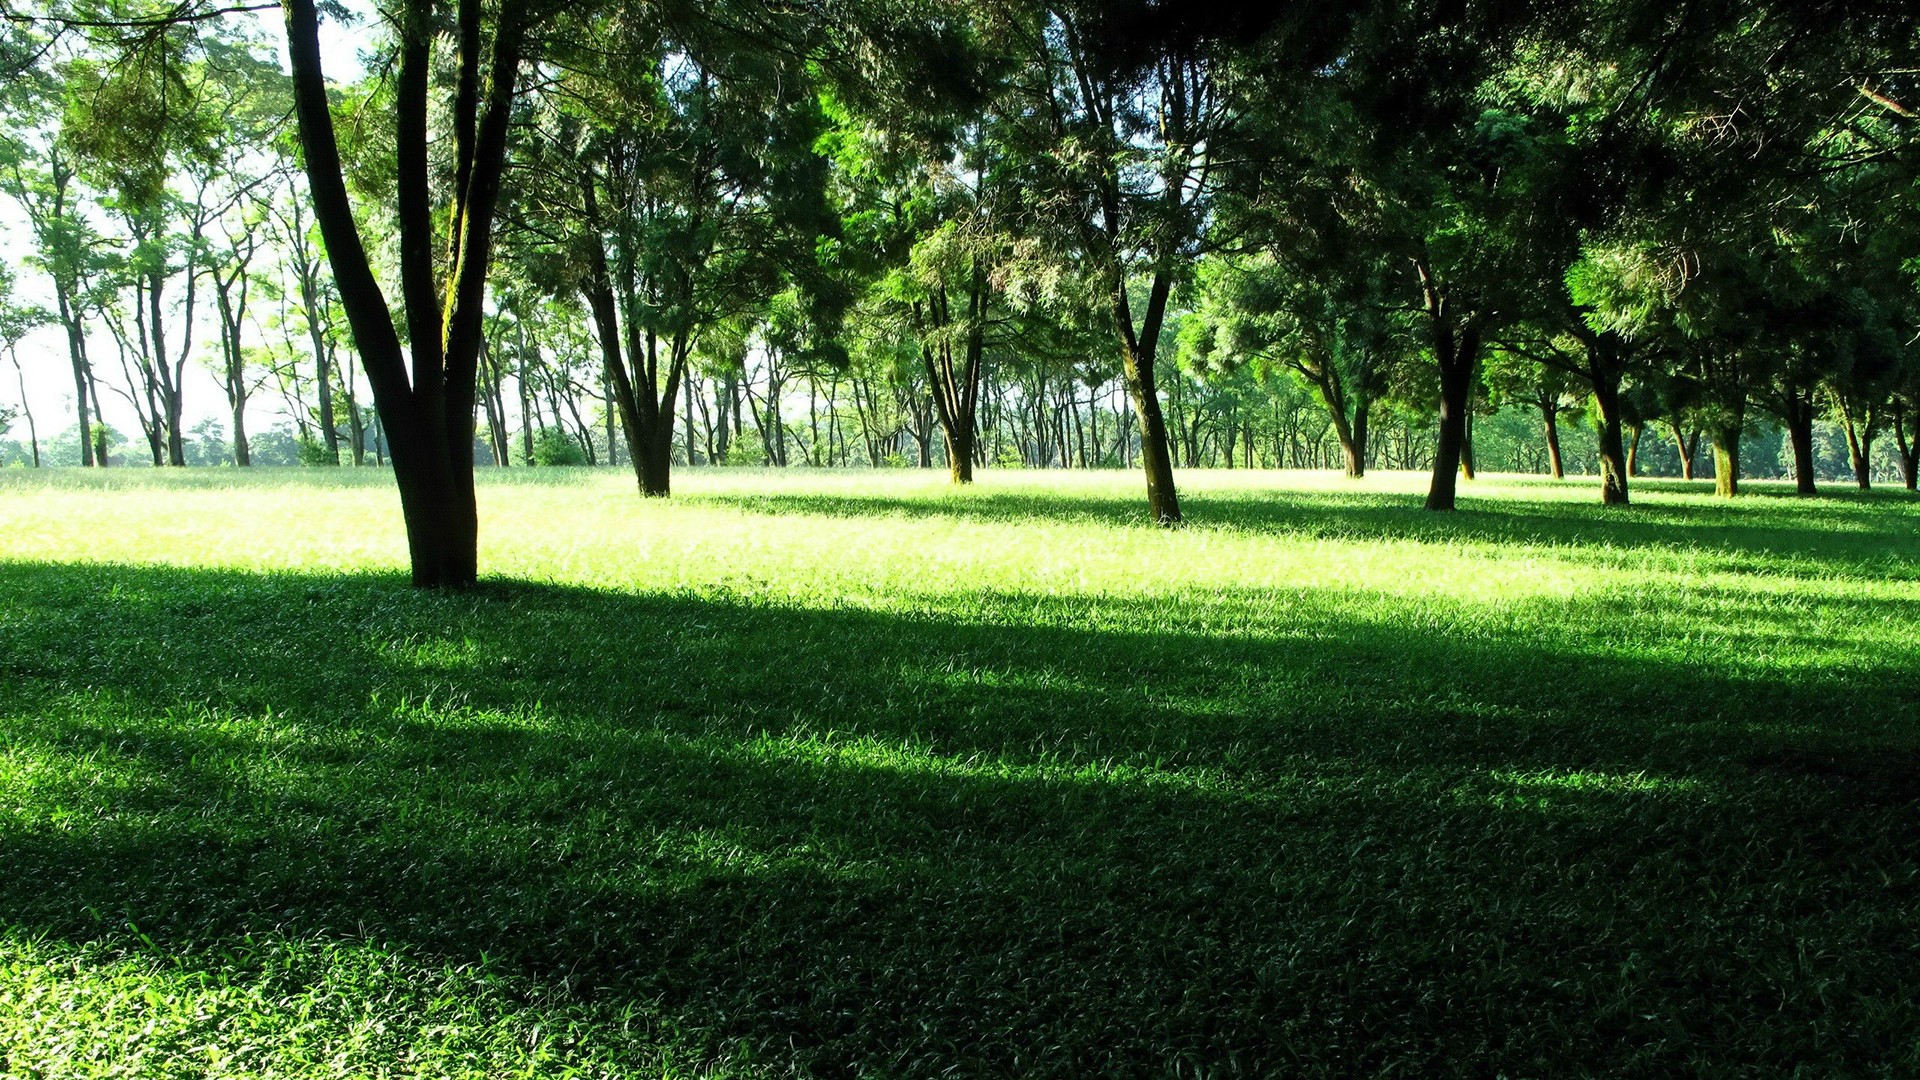 General 1920x1080 grass trees outdoors sunlight